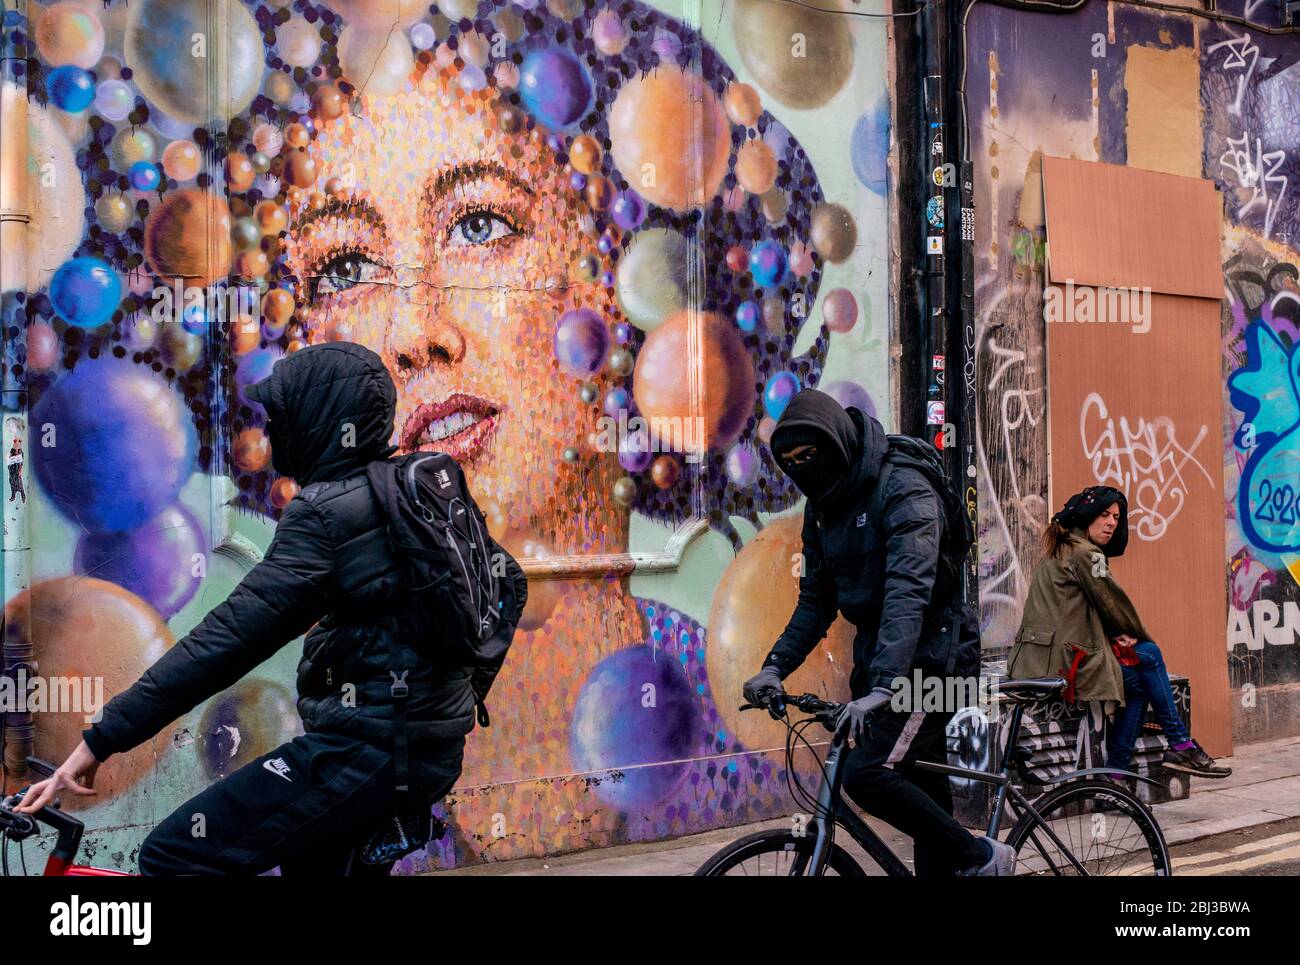 Zwei junge Hooded Cycle vorbei an einem riesigen Stück Graffiti-Kunst, während eine Dame in der Nähe sitzt und die Kamera betrachtet. Stockfoto